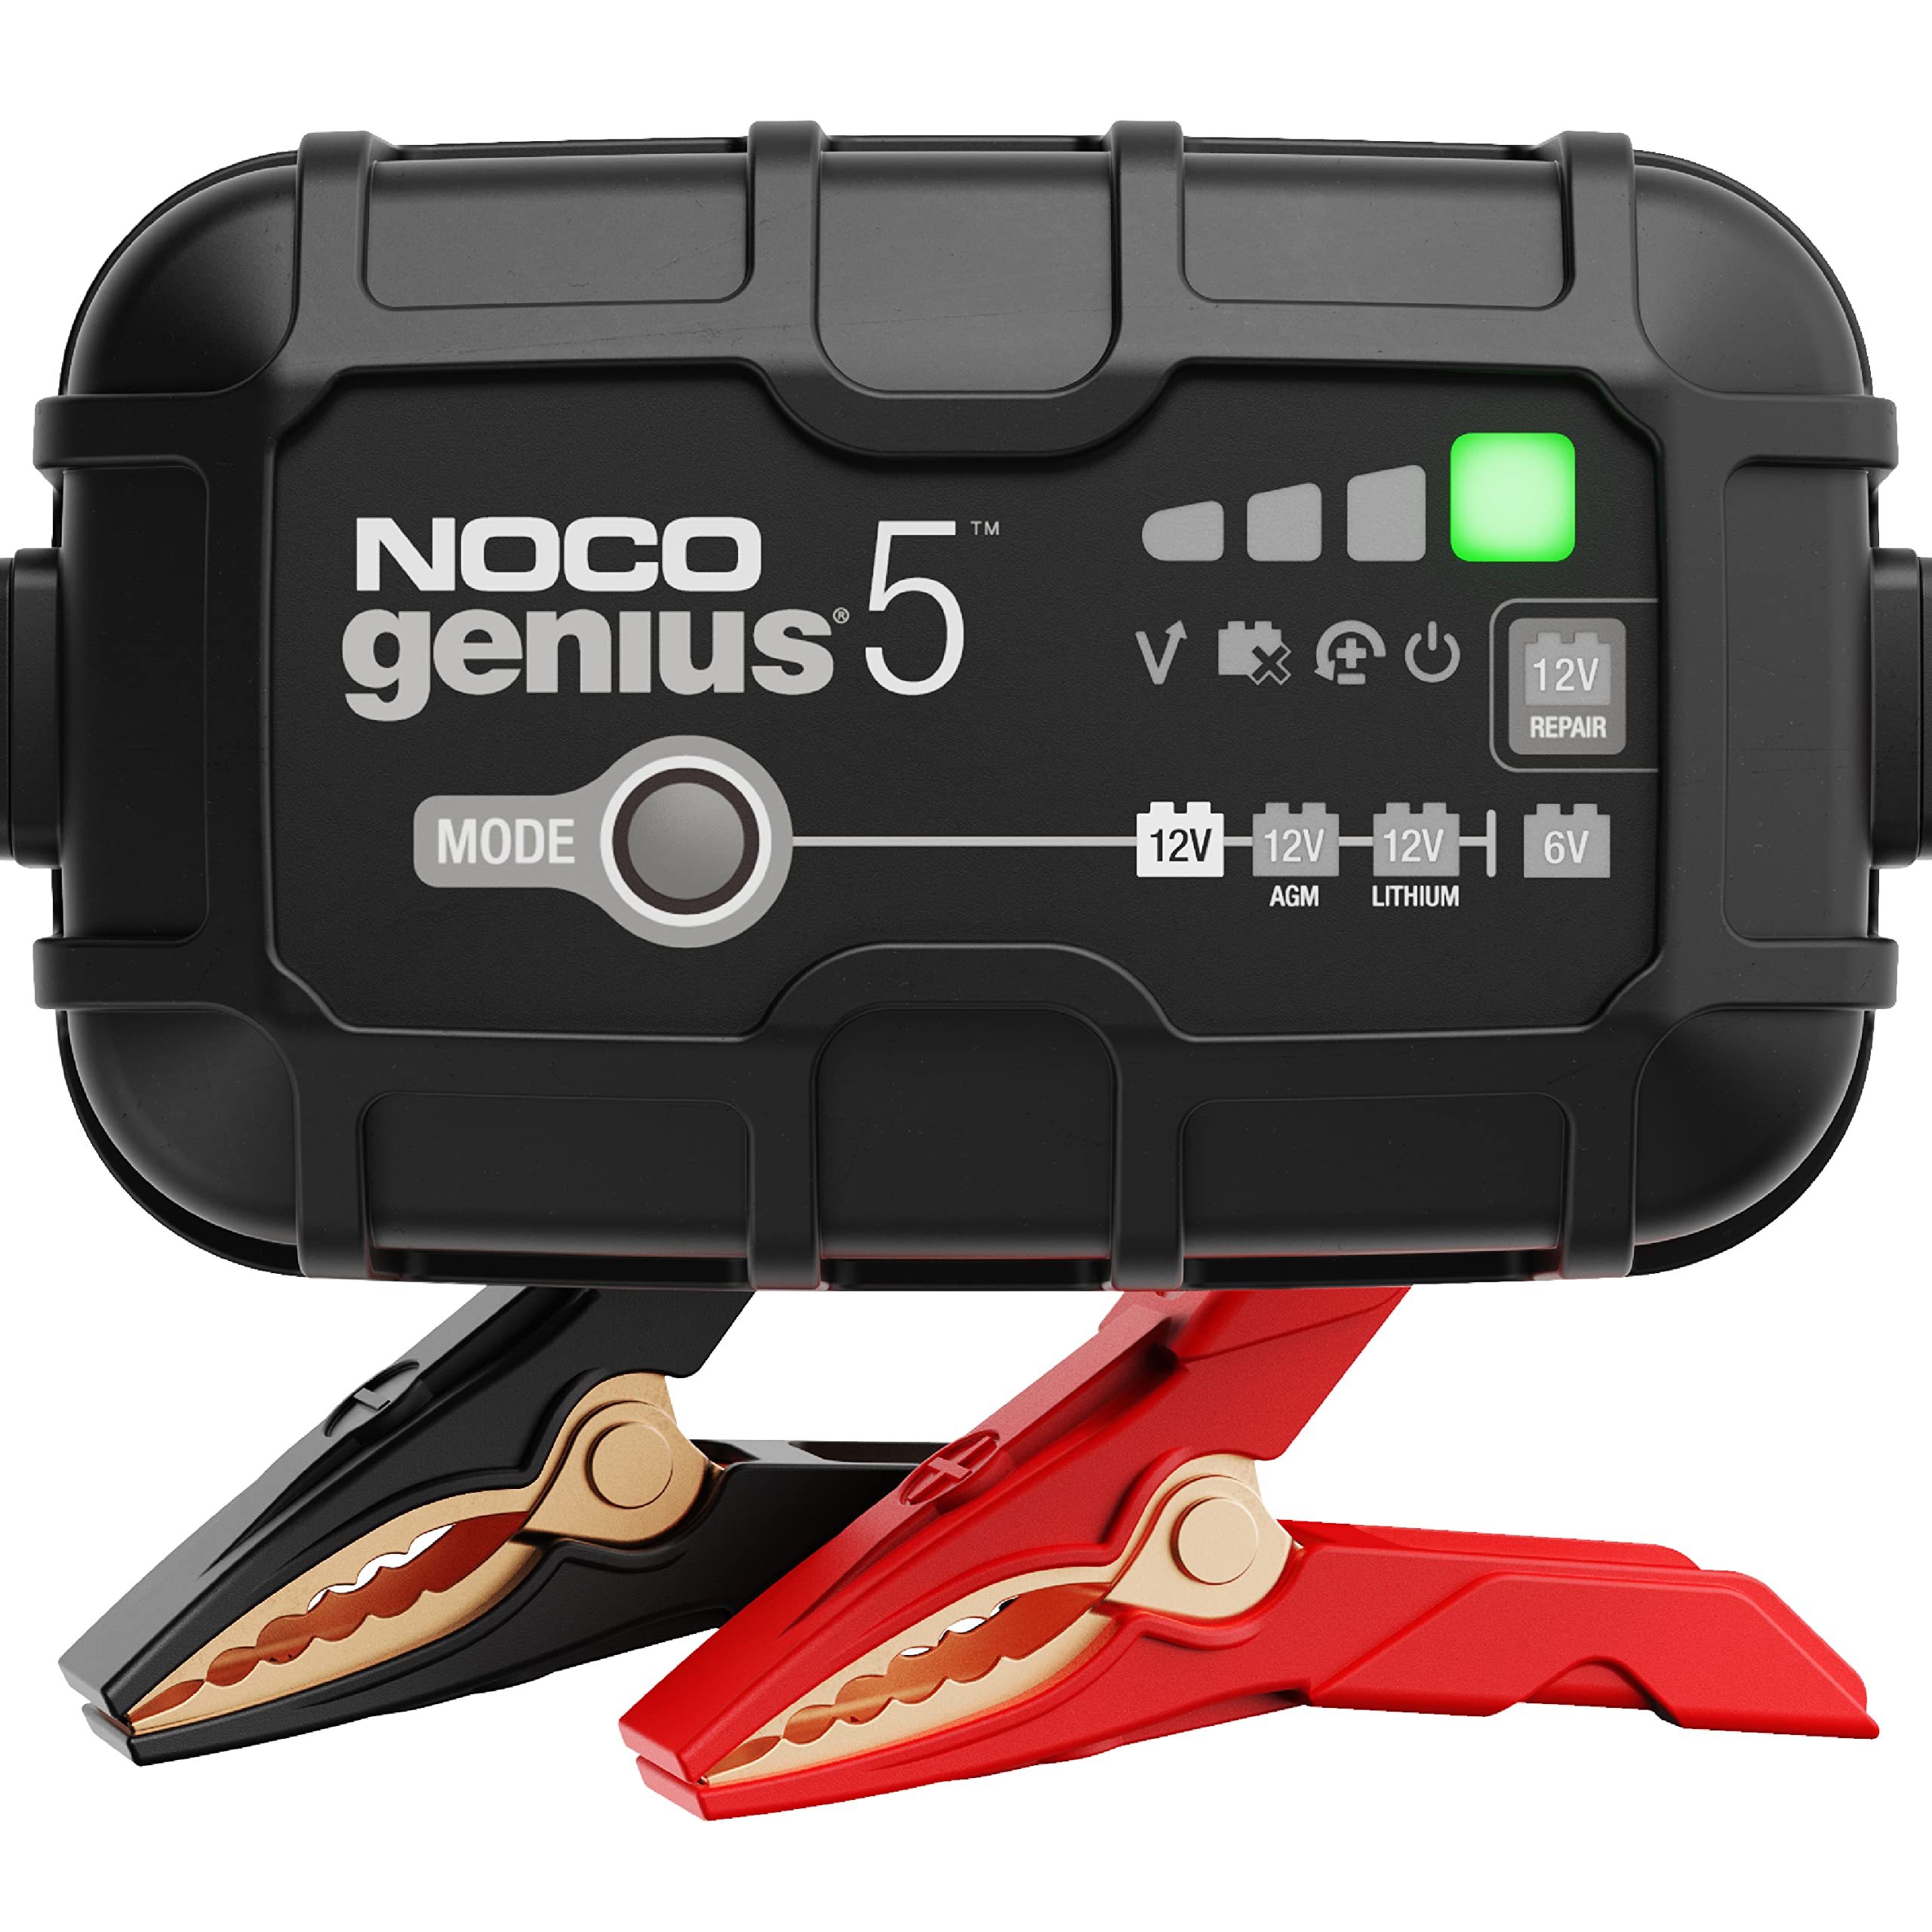  NOCO GENIUS5、5A スマートカーバッテリー充電器、6V および 12V 自動車用充電器、バッテリーメンテナ、トリクル充電器、フロート充電器、オートバイ...